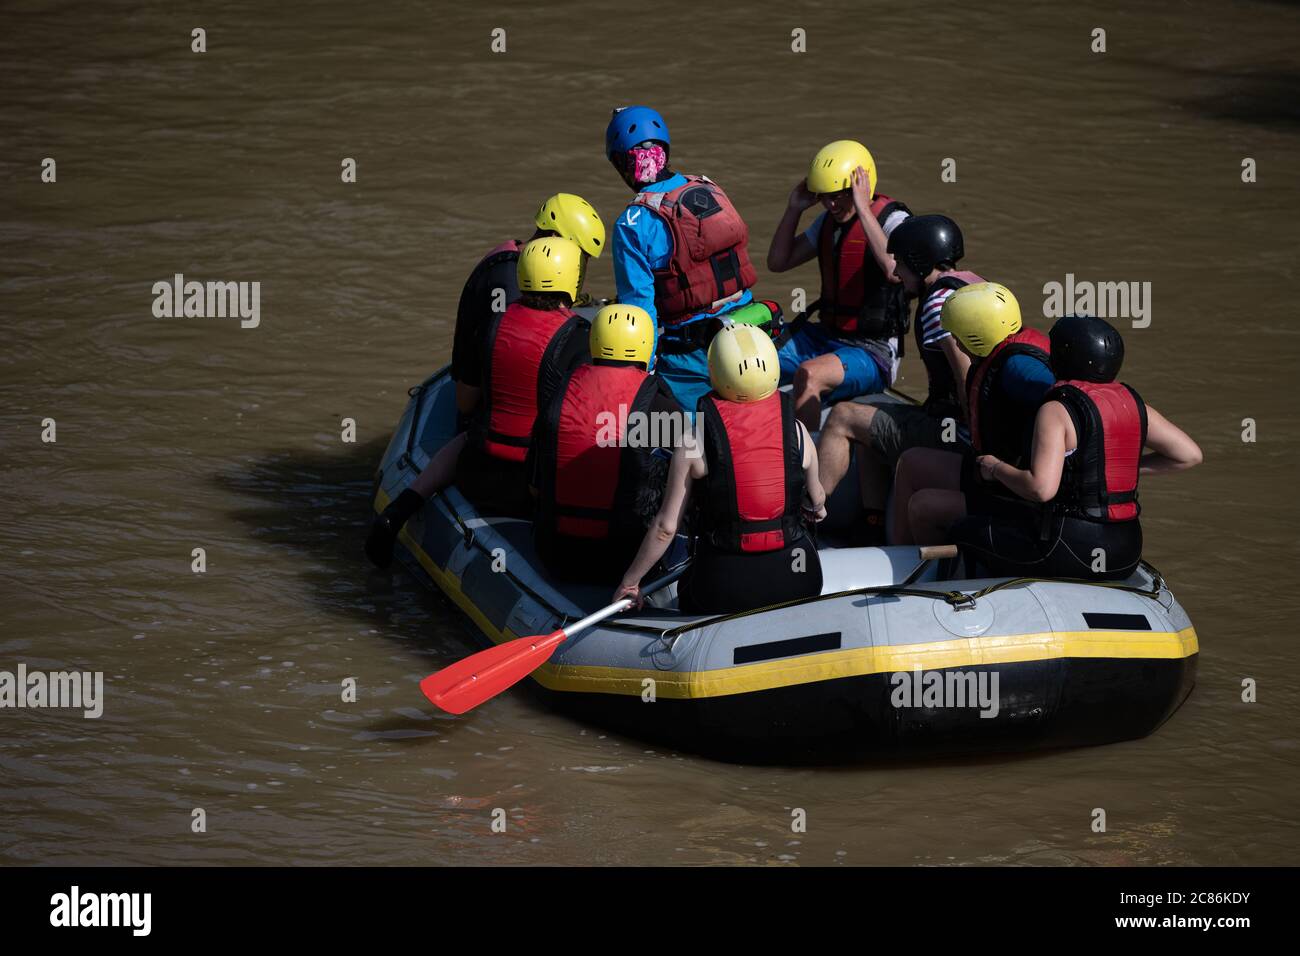 Das Rafting-Boot hielt in einem trüben Wasser an, um die Teammitglieder für ein verrücktes Abenteuer auf dem Fluss wieder zu stärken Stockfoto